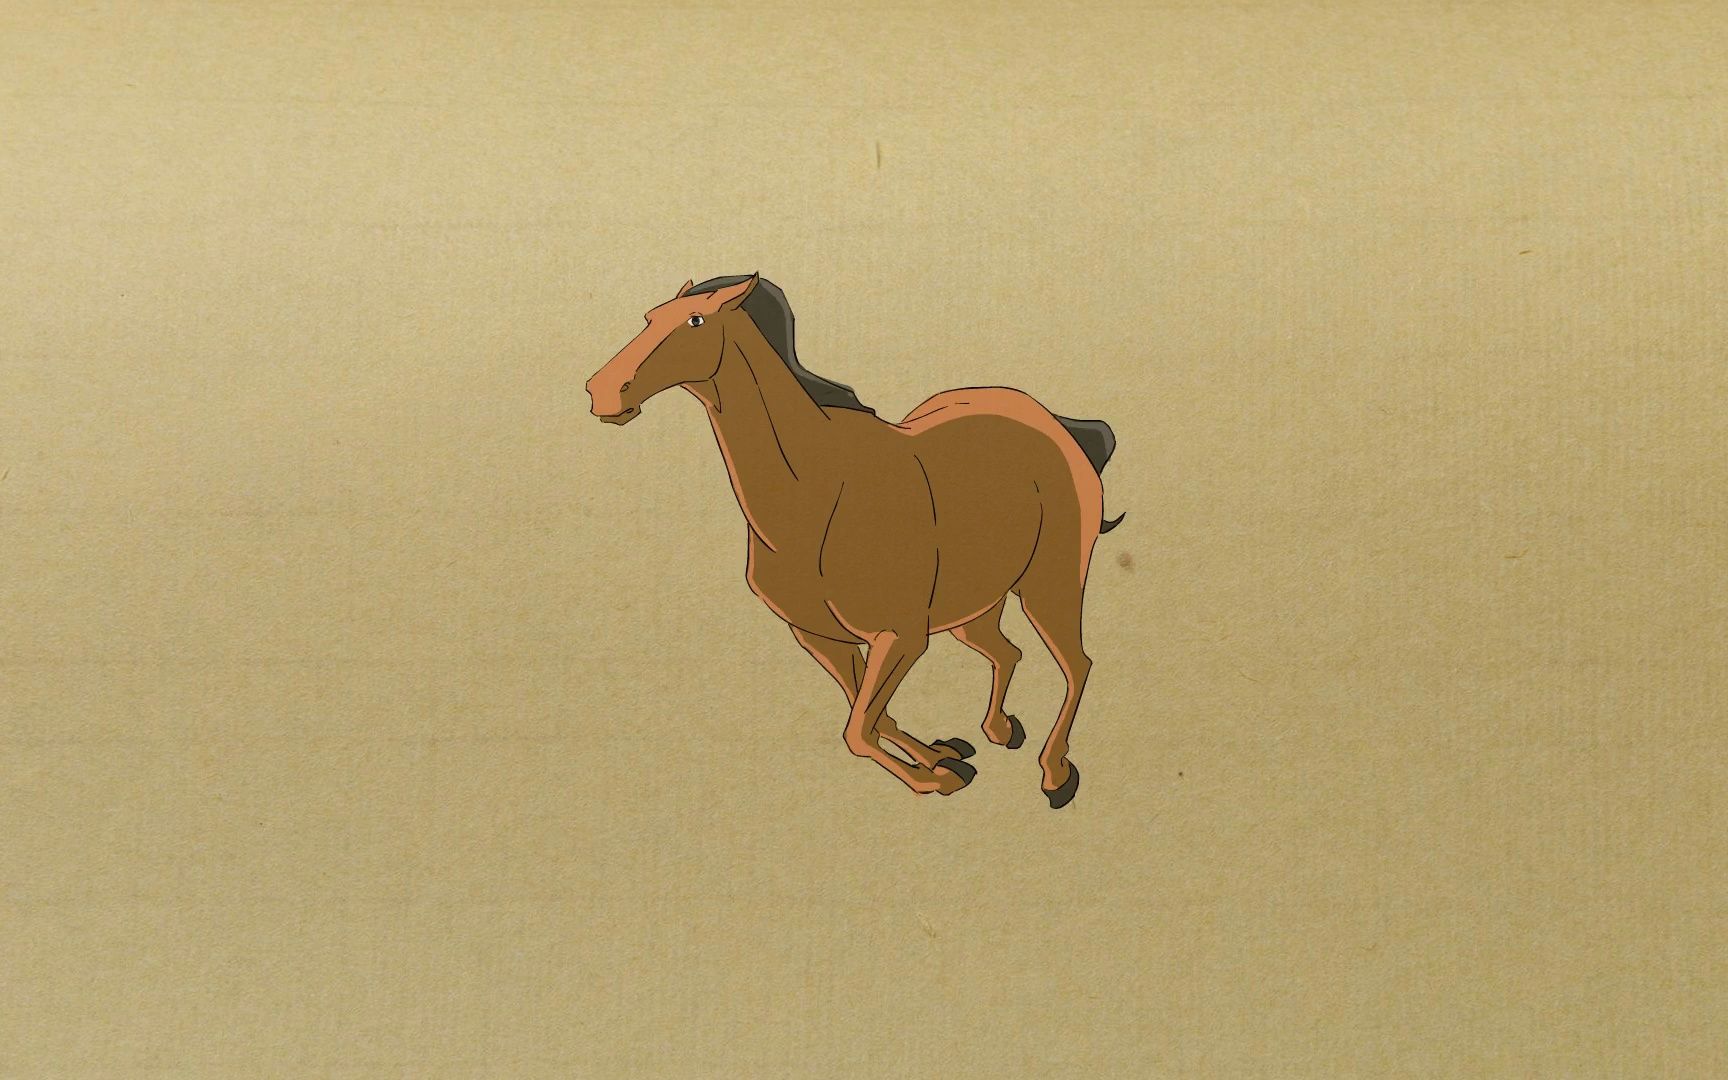 【动画教程】马快速奔跑的动作设计